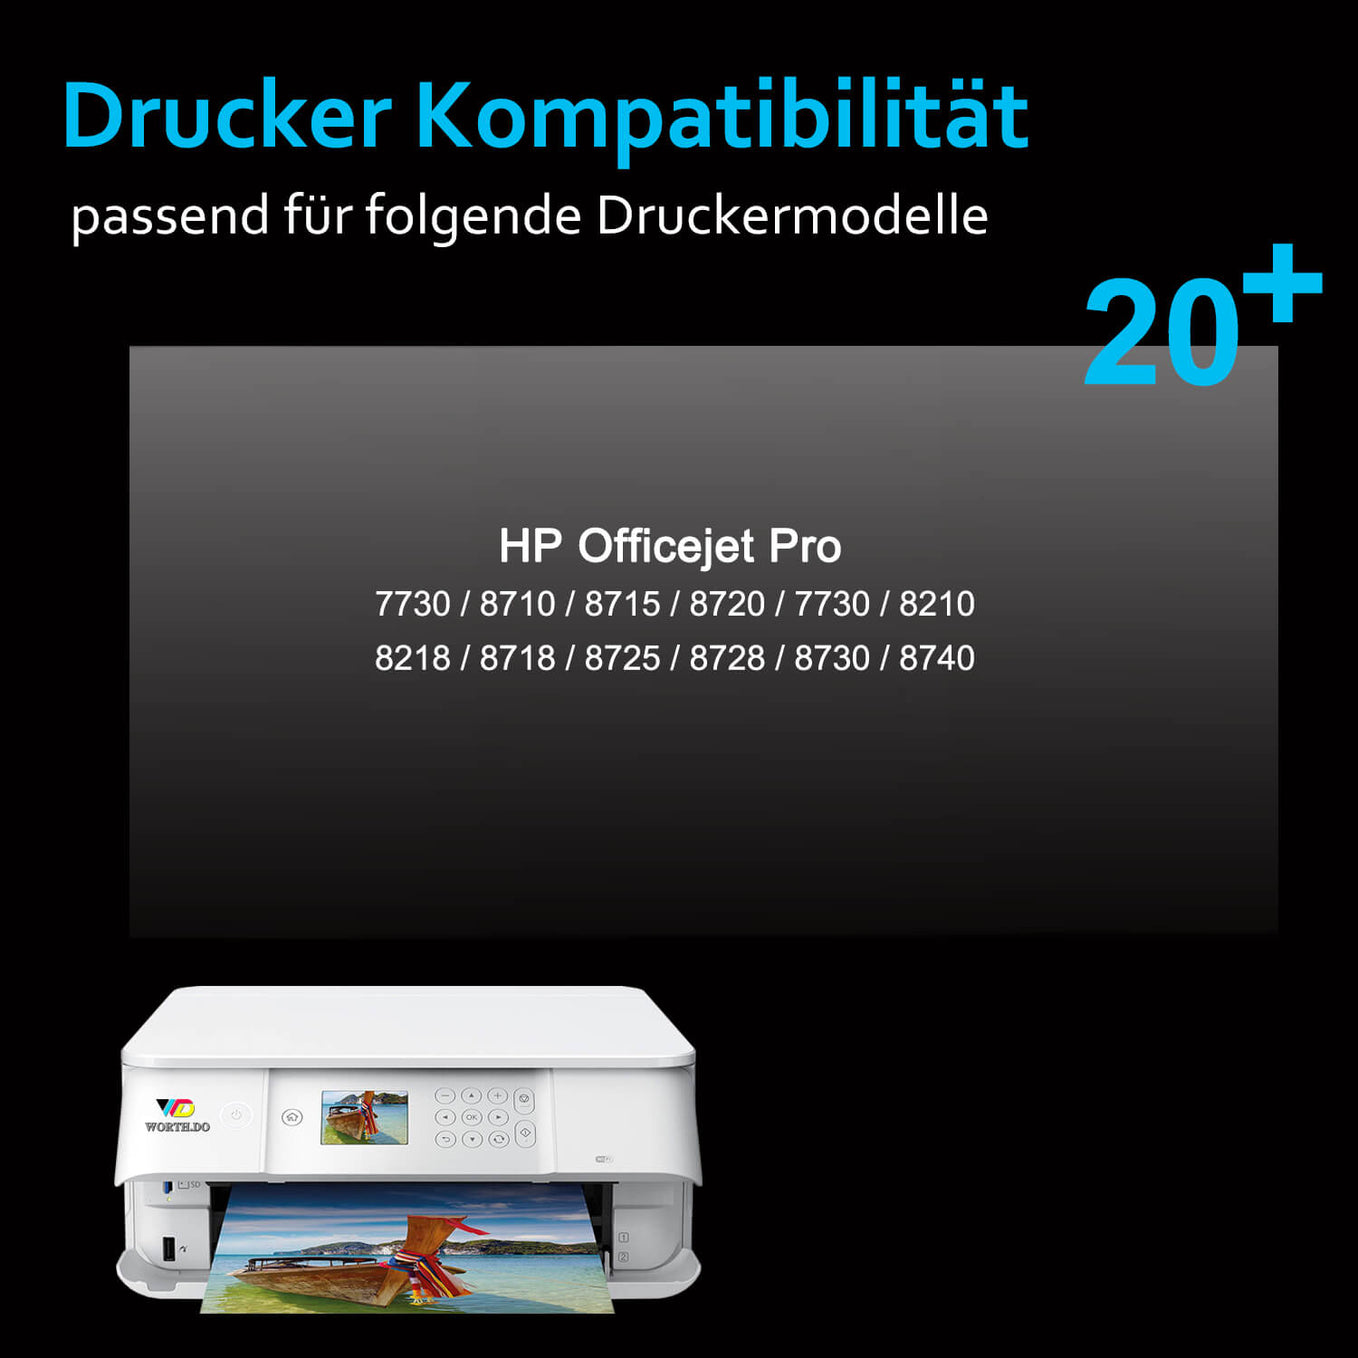 hp-953xl-tintenpatronen-drucker-kompatibilitaet-worthdo